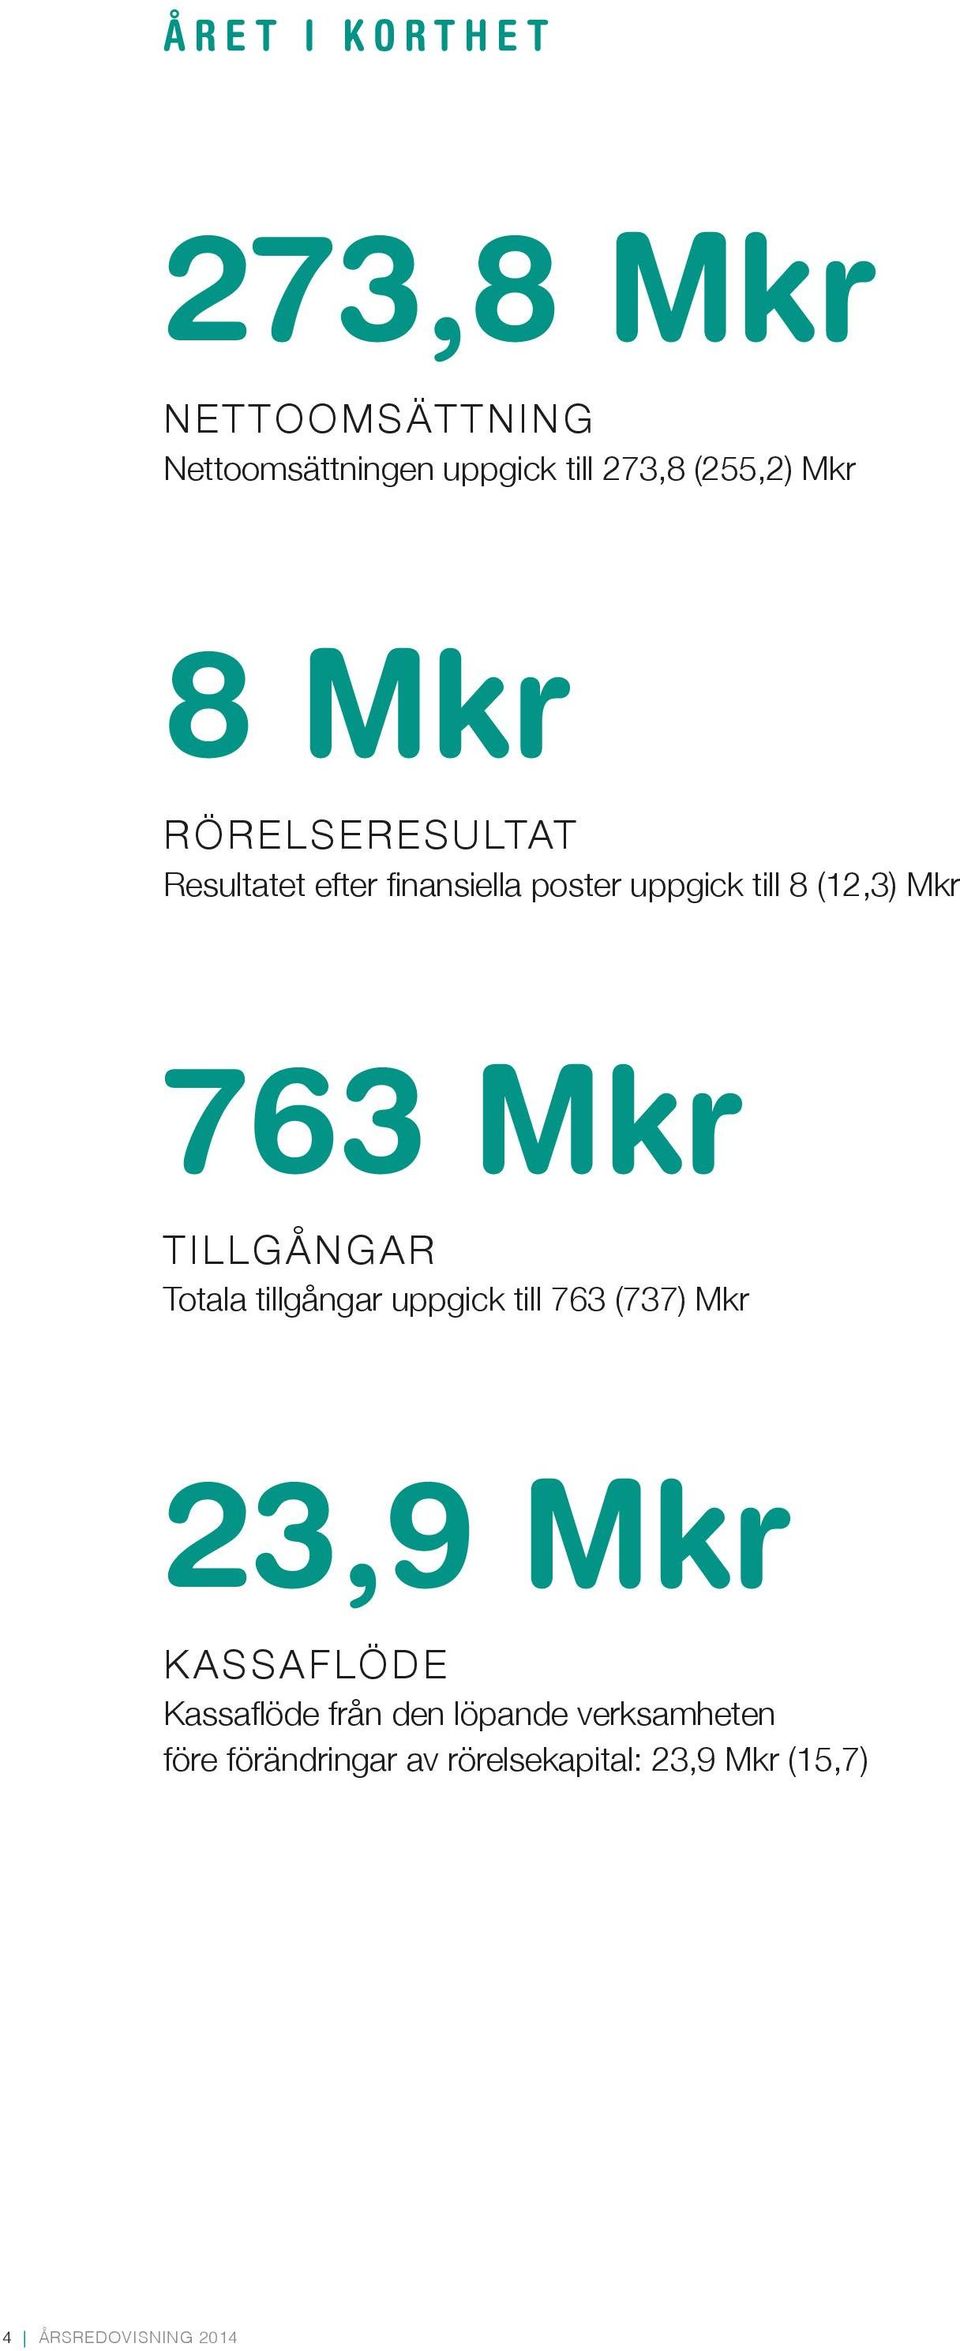 TILLGÅNGAR Totala tillgångar uppgick till 763 (737) Mkr 23,9 Mkr KASSAFLÖDE Kassaflöde från